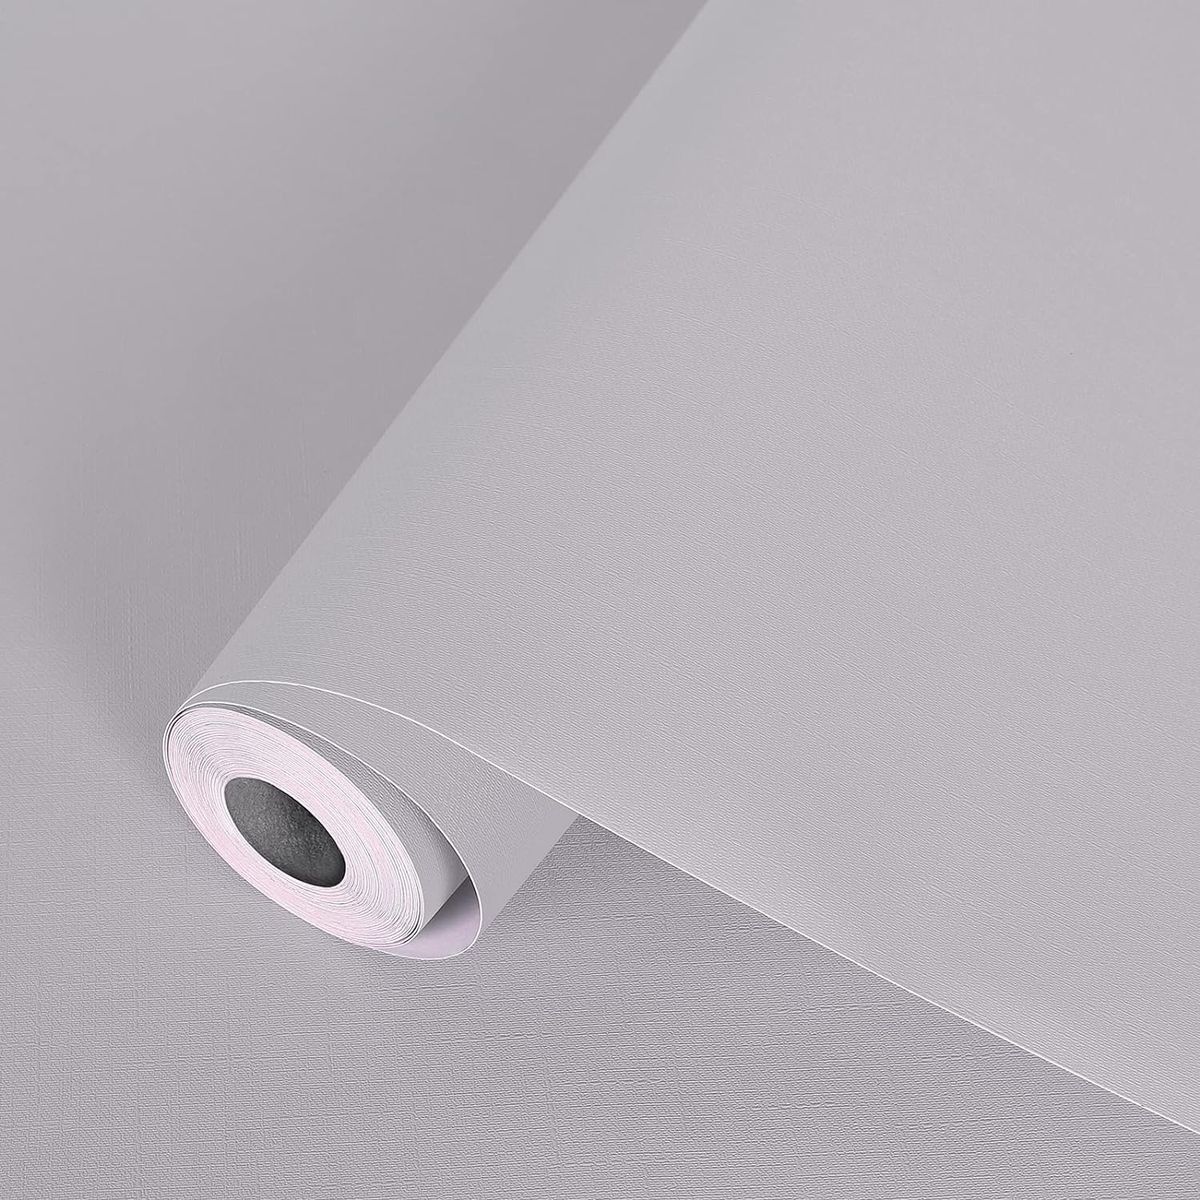 商品情報商品の説明主な仕様 【壁紙内容＆サイズ】-- 壁紙シール(幅60cm×5M 厚さ約0.3mm 裏紙を含める)一巻、日本語取扱説明書、へら（リール内に置き）付き、壁紙の上から貼れる壁紙です。一般壁紙が45cmに対して、当社のカッティングシートは幅60cmサイズで、継ぎ目と貼る回数が少なく早く貼れます。※壁紙シールは生産ロットにより、色差が出る可能性があるので、一回に多めにご購入するのをおすすめします。※壁紙は写真できるだけ実物に近い色を表現できるよう努めておりますが、ご利用のPCやスマホなど表示機器の都合上、若干の差異が生じますことをあらかじめご了承ください。br【貼って剥がせる壁紙】-- 壁紙おしゃれは接着剤いらない、裏面粘着シートタイプ壁紙です。リメイクシートは台紙にガイドラインもついていて、大きさはガイドラインに沿ってハサミなどで簡単きれいにカットしてそのまま貼り付けます（オリジナル貼り方説明書付き）。壁紙剥がせるシートは剥がす時にのりがベタつかない。br【厚地で耐久性高い】-- 他にはない0.3mm (裏紙を含める)の厚み壁紙で、下地が透けることもなく、耐久性や耐摩耗性に優れています。壁紙シールはがせるおしゃれは厚い分のため、シワ抜きと気泡抜きがしやすく簡単に貼り付けます。剥がせる壁紙は厚みのある丈夫な素材で破れが起きにくいというのが特長です。br【優しい素材】-- 壁紙はPVC（ポリ塩化ビニル）を採用し耐熱性と耐油性が良いです。壁紙シールは耐熱ではあり難燃ではないので、安全の為にくれぐれも火に直接当てないでください。表面は平らで少しエンボス加工が施されている同時に、滑らかさを維持しています。壁紙はがせるシールは防水加工も施されていて家具や壁を湿気から守ることができます。液体の汚れも付きにくく、お手入れは水拭きだけでいいです。br【壁紙リメイクシート適用場所】-- リビング、ベッドルーム、キッチン、玄関、壁や壁紙の上にも、机、クロゼット、椅子、スピーカー、ノートパソコンなどの家具、かべがみ、クロス、ふすまの補修、家電や小物など、お気軽にお部屋の模様替え、気分転換を楽しめましょう！人目で品質を最終確認、商品に何か不具合または何か不明点がございましたら、遠慮しなくてご連絡をいただきますようお願い申し上げます。必ずお客様にご満足いただけますよう迅速に対応いたします。